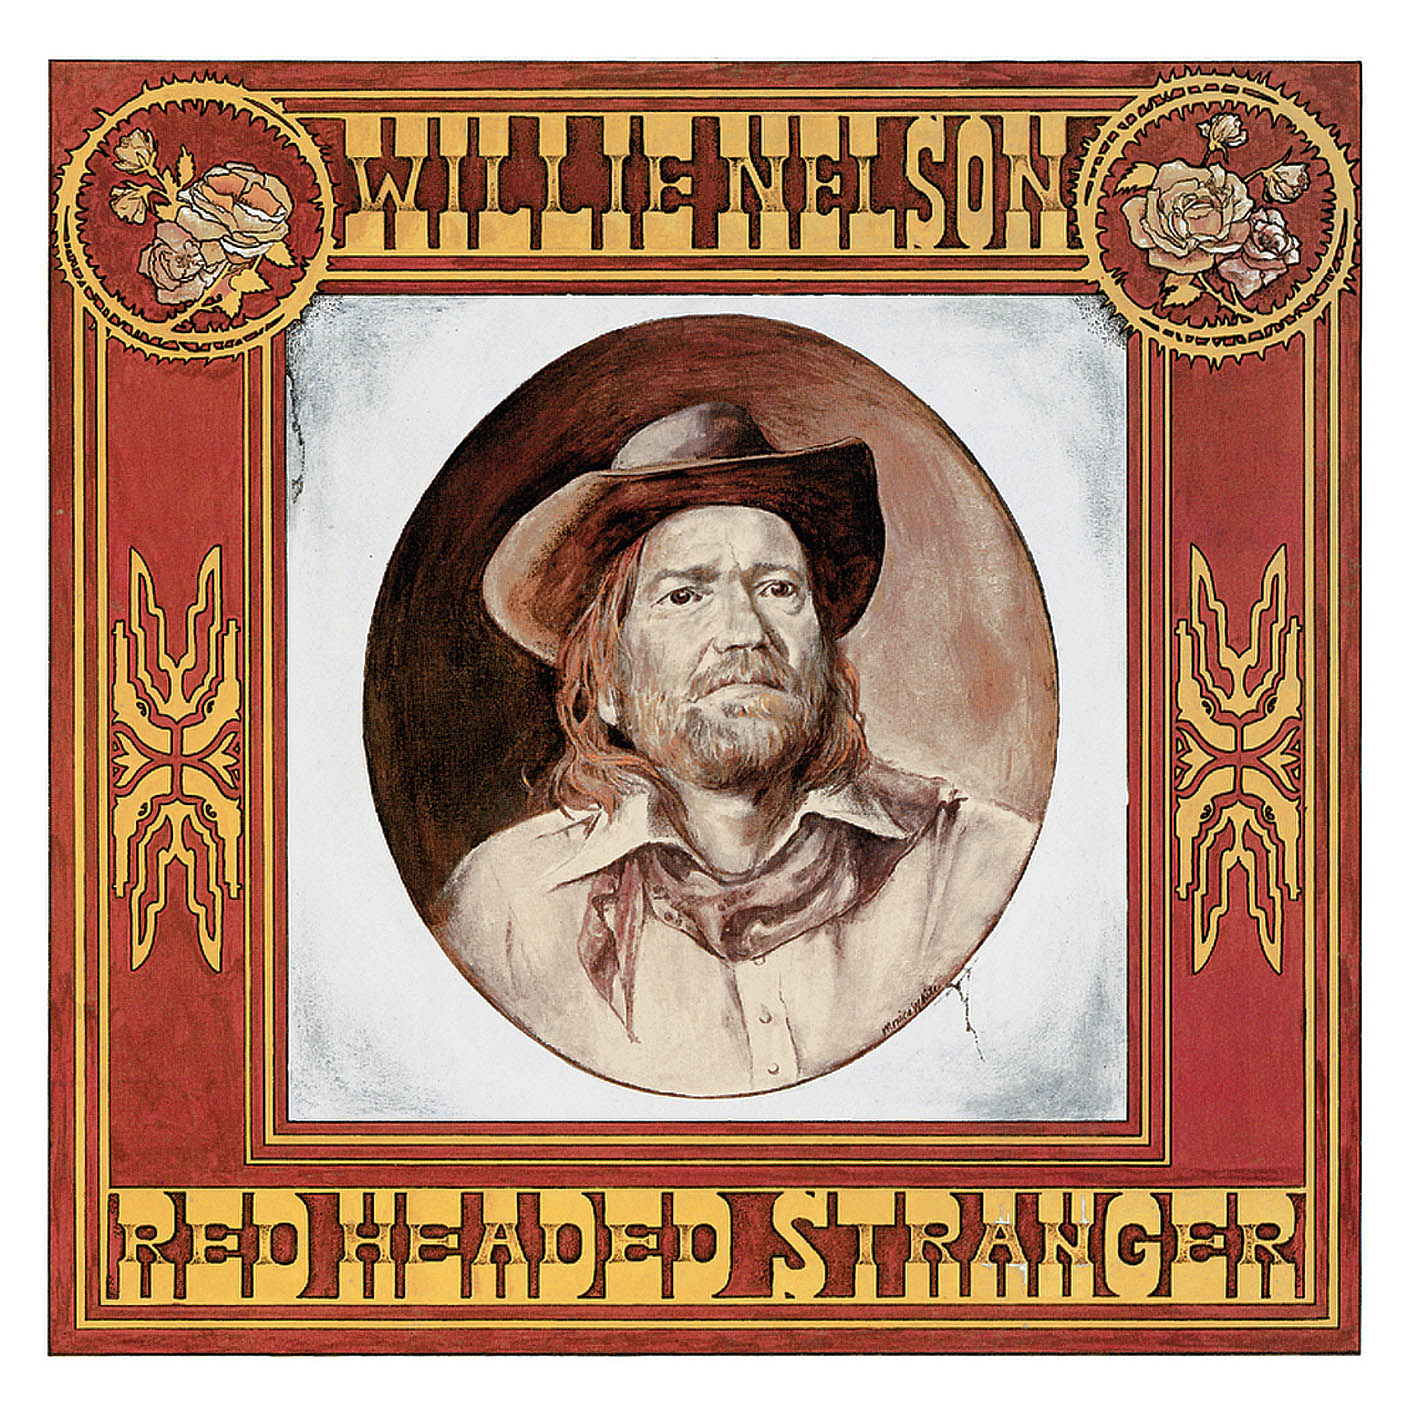 Willie Nelson - Red Headed Stranger (1975/2014) [HDTracks FLAC 24bit/96kHz]